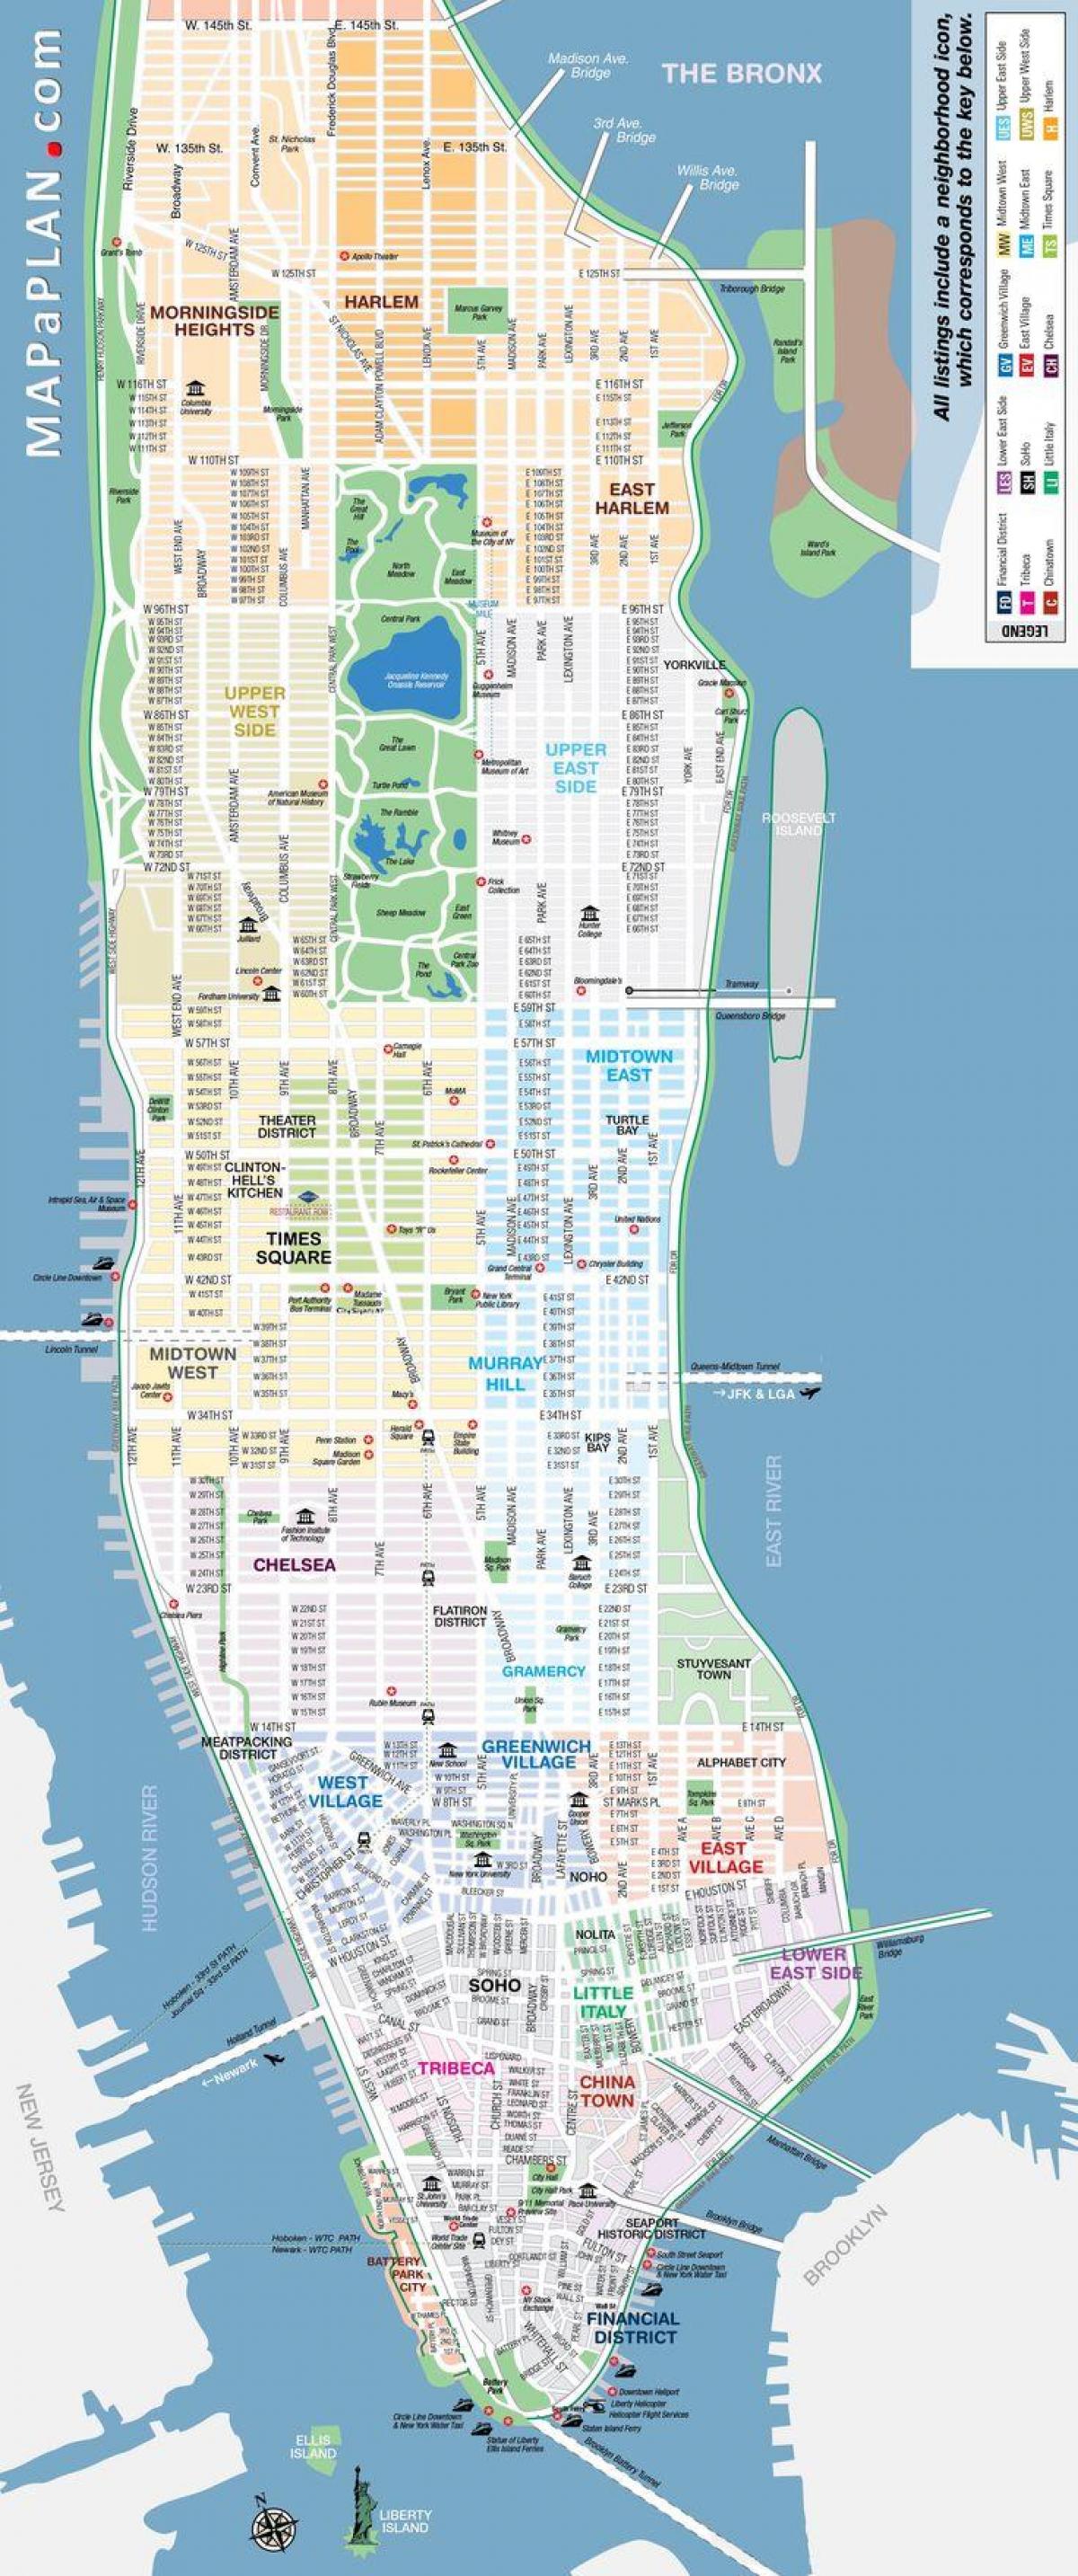 map of NYC neighborhood with streets